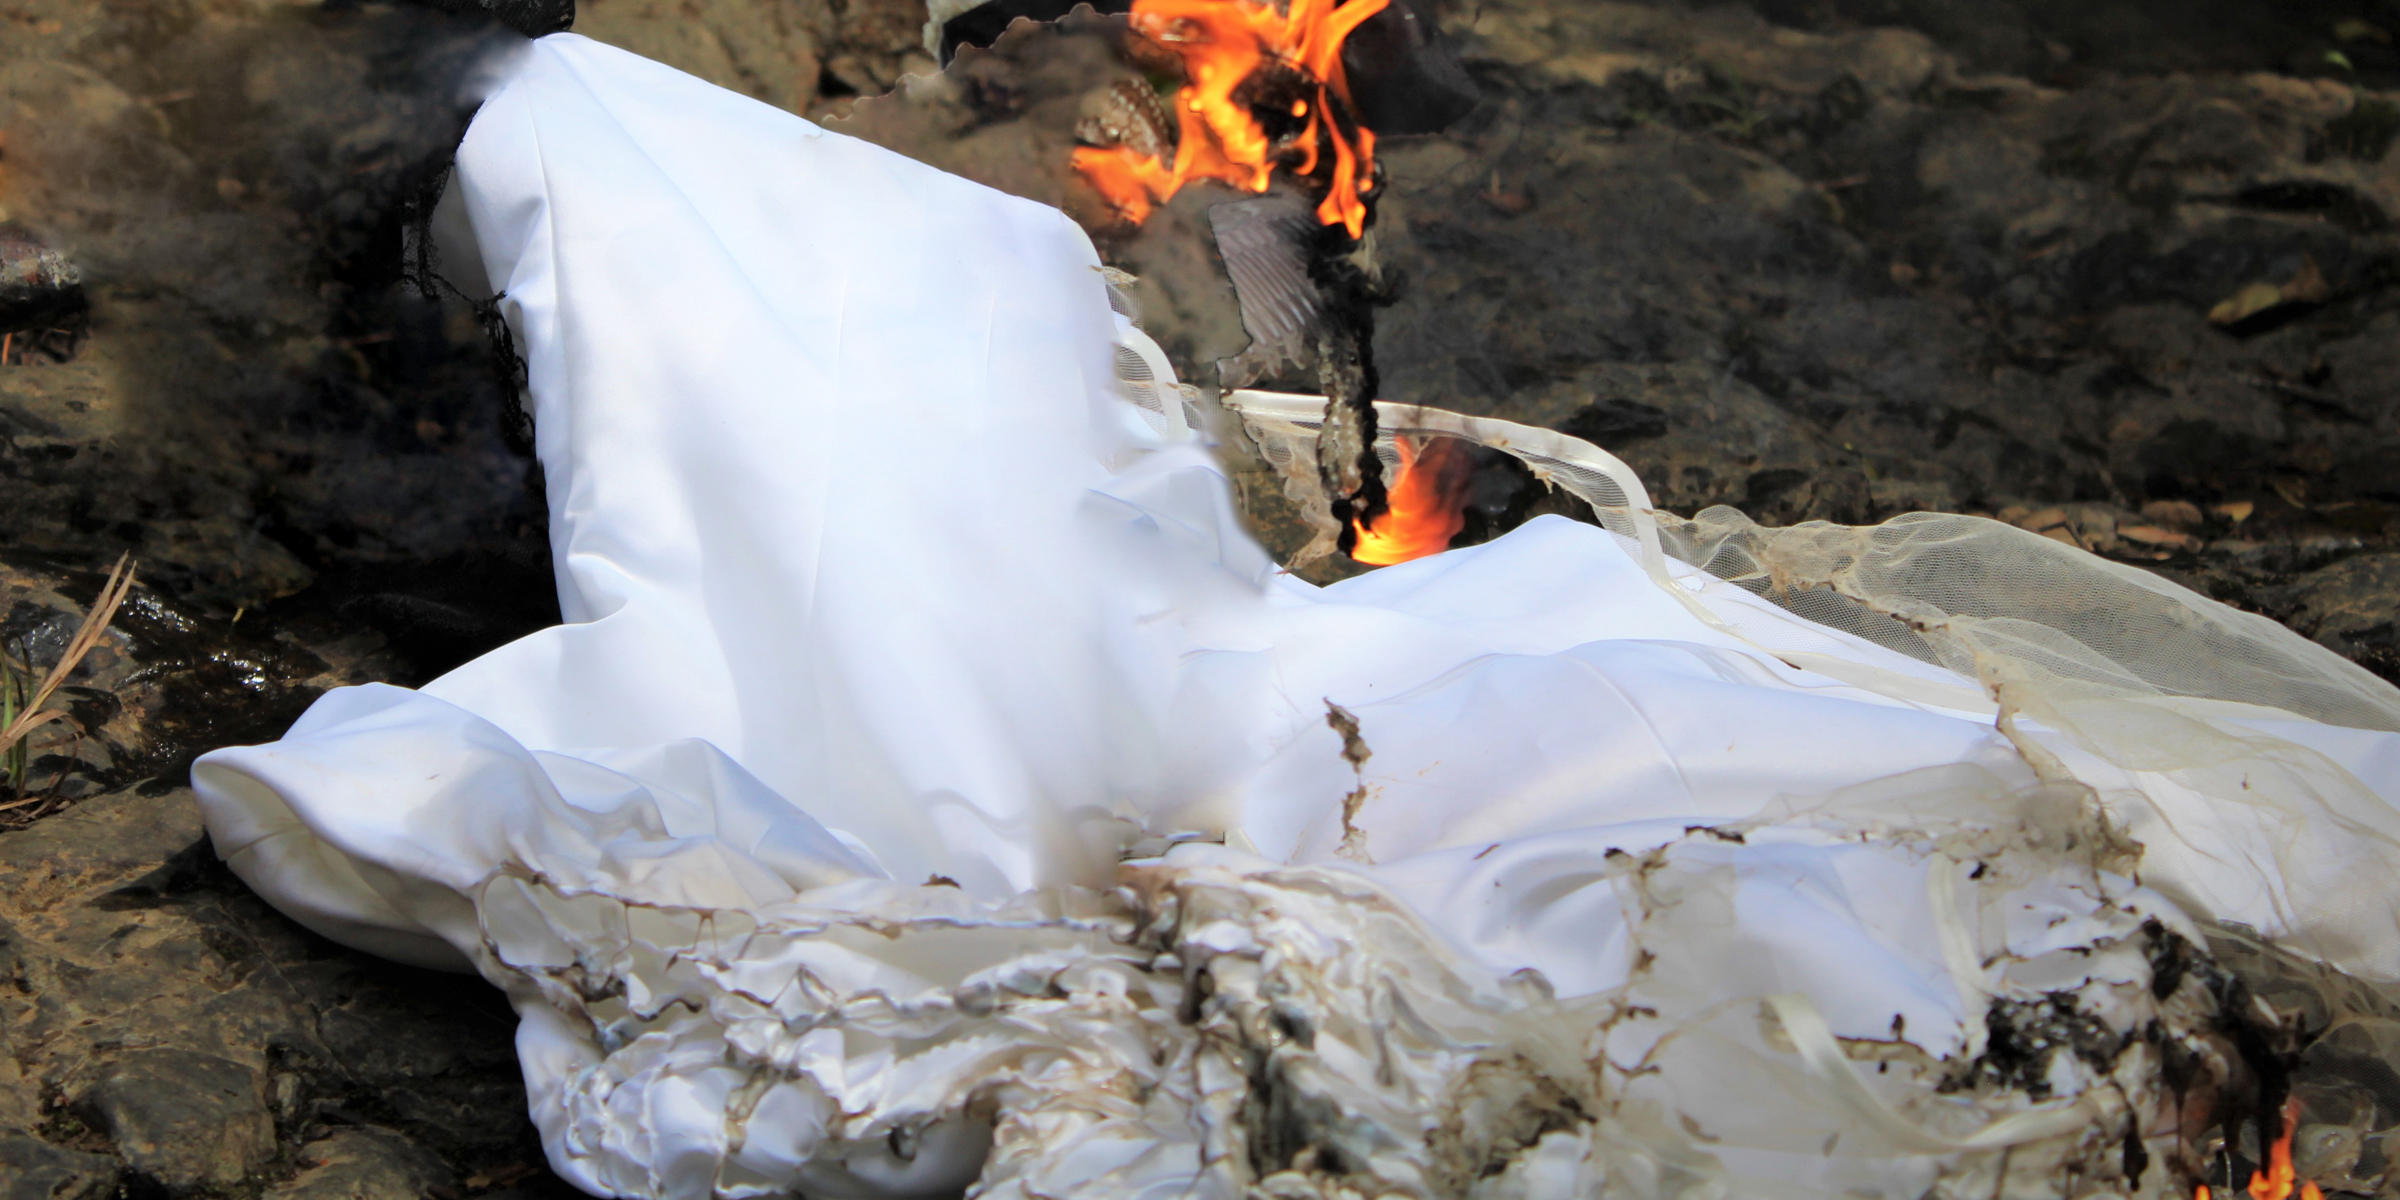 Robe de mariée en feu | Source : Shutterstock